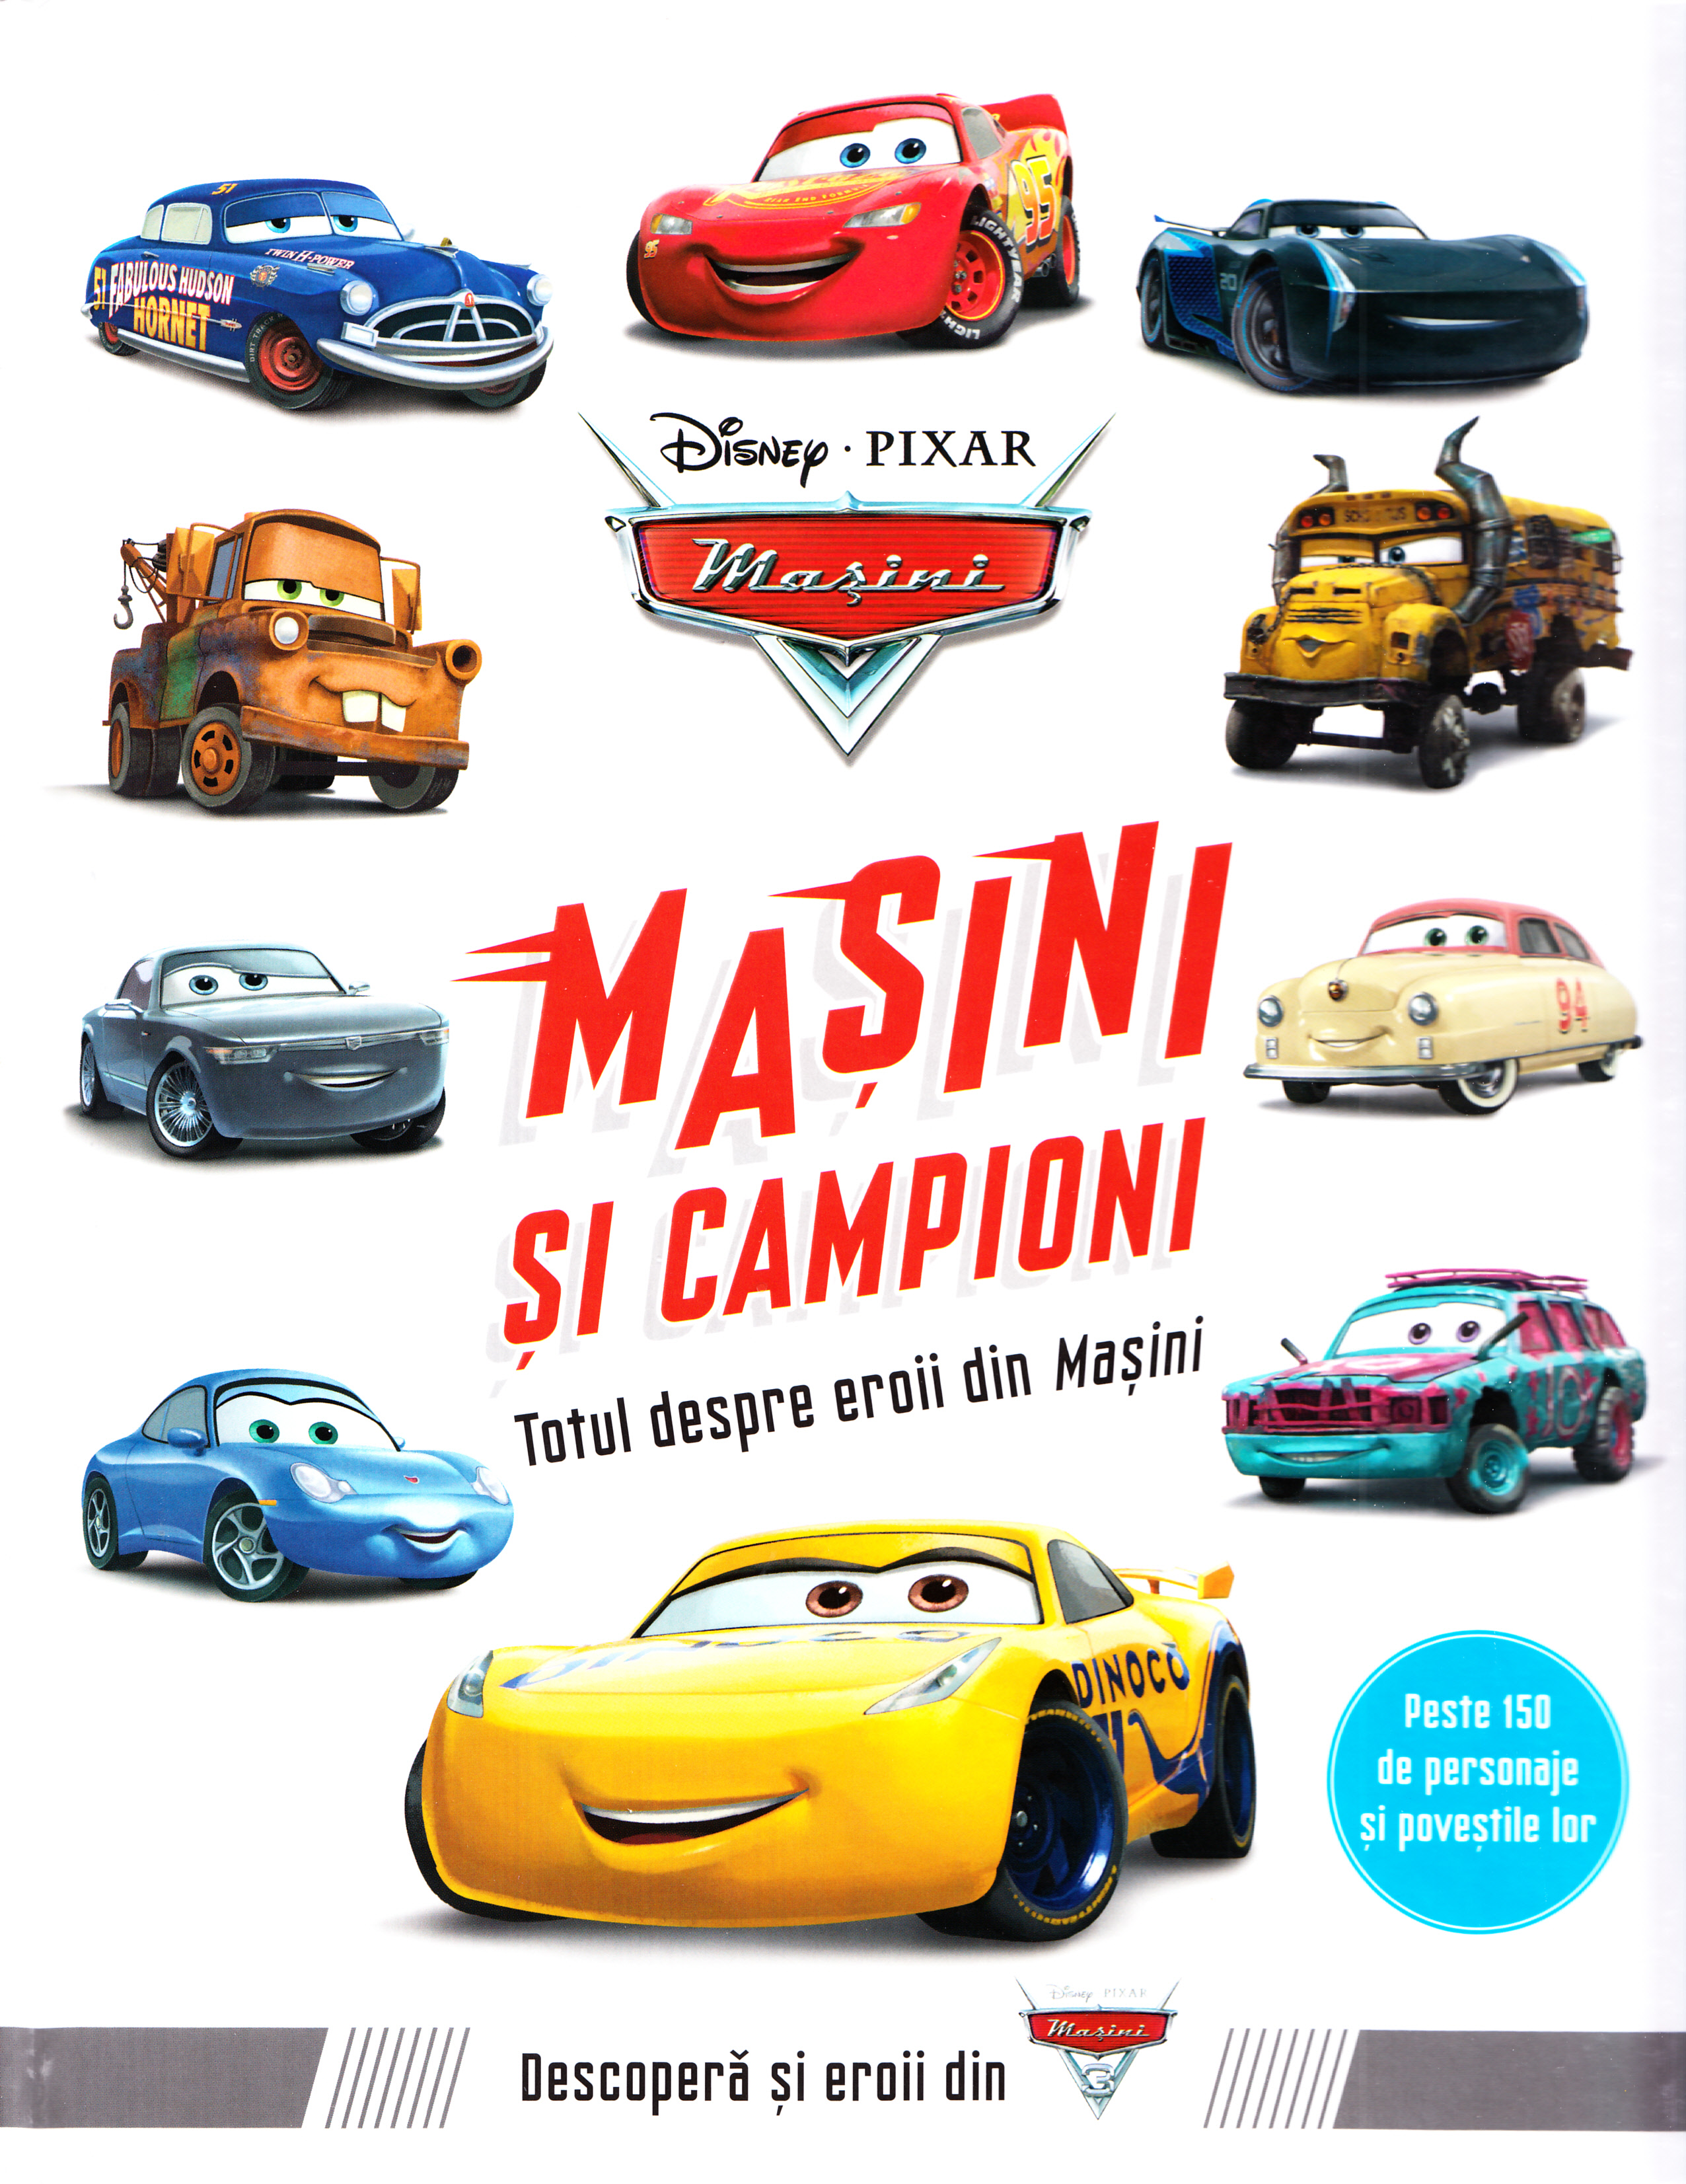 Disney Pixar Masini - Masini si campioni. Totul despre eroii din Masini